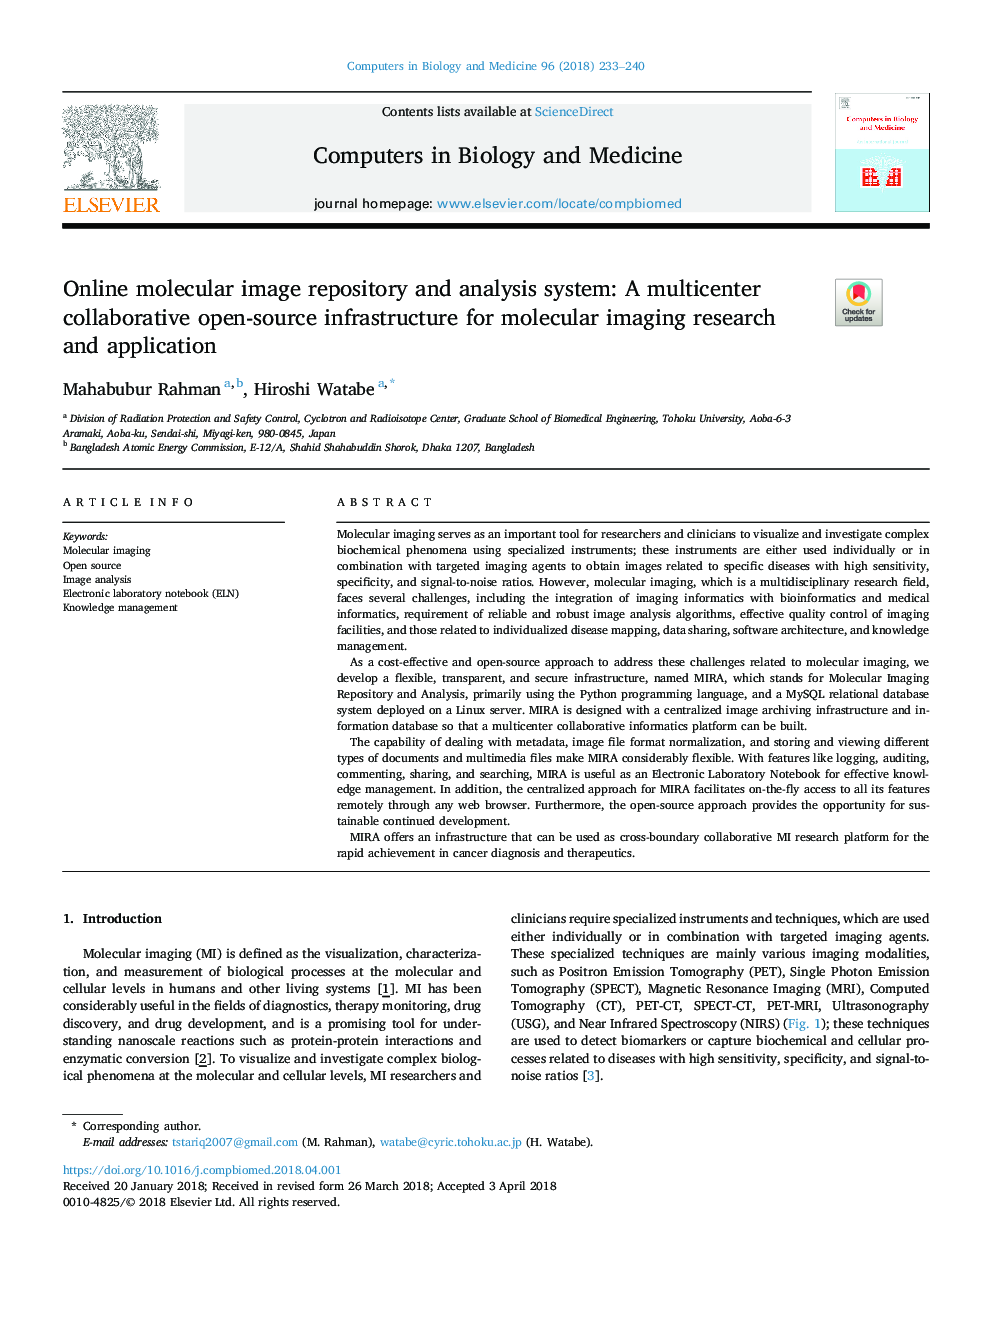 مخزن و سیستم تجزیه و تحلیل تصویر مولکولی آنلاین: یک زیرساخت منبع باز مشترک متمرکز برای تحقیقات و کاربرد تصویربرداری مولکولی 